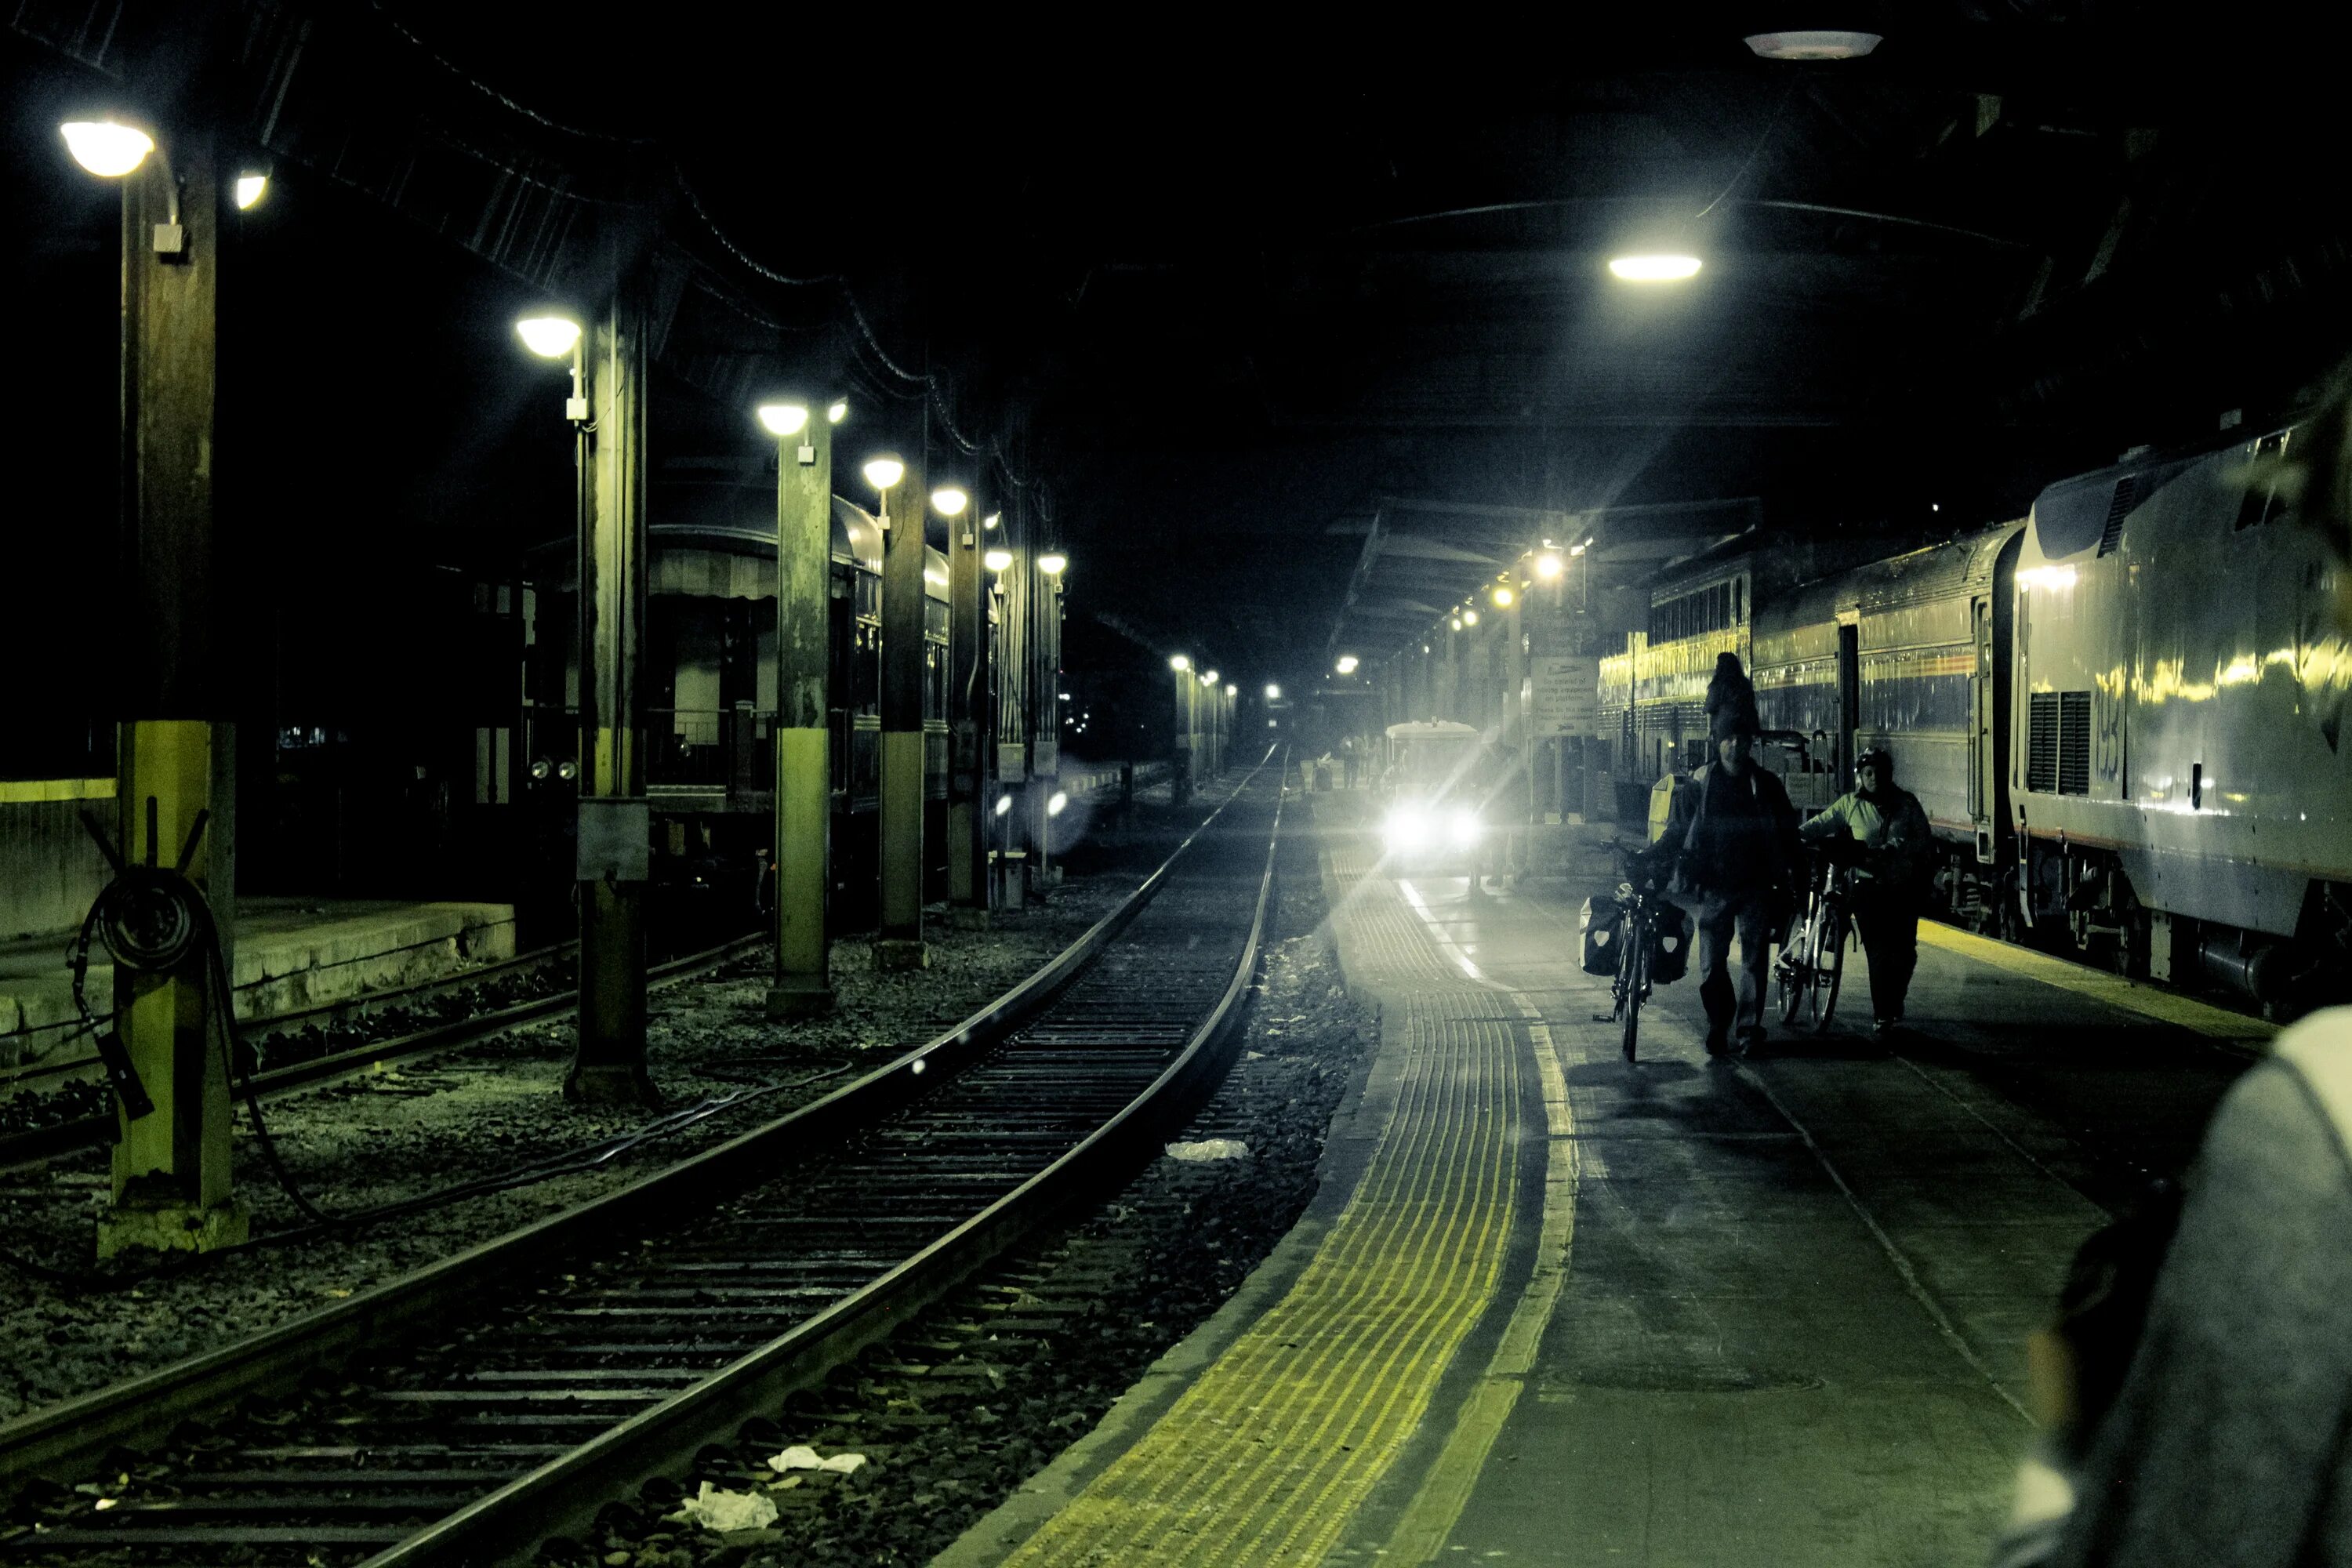 Ночной вокзал. Железная дорога ночью. Ночной поезд. ЖД вокзал ночью. Поезд в темноте